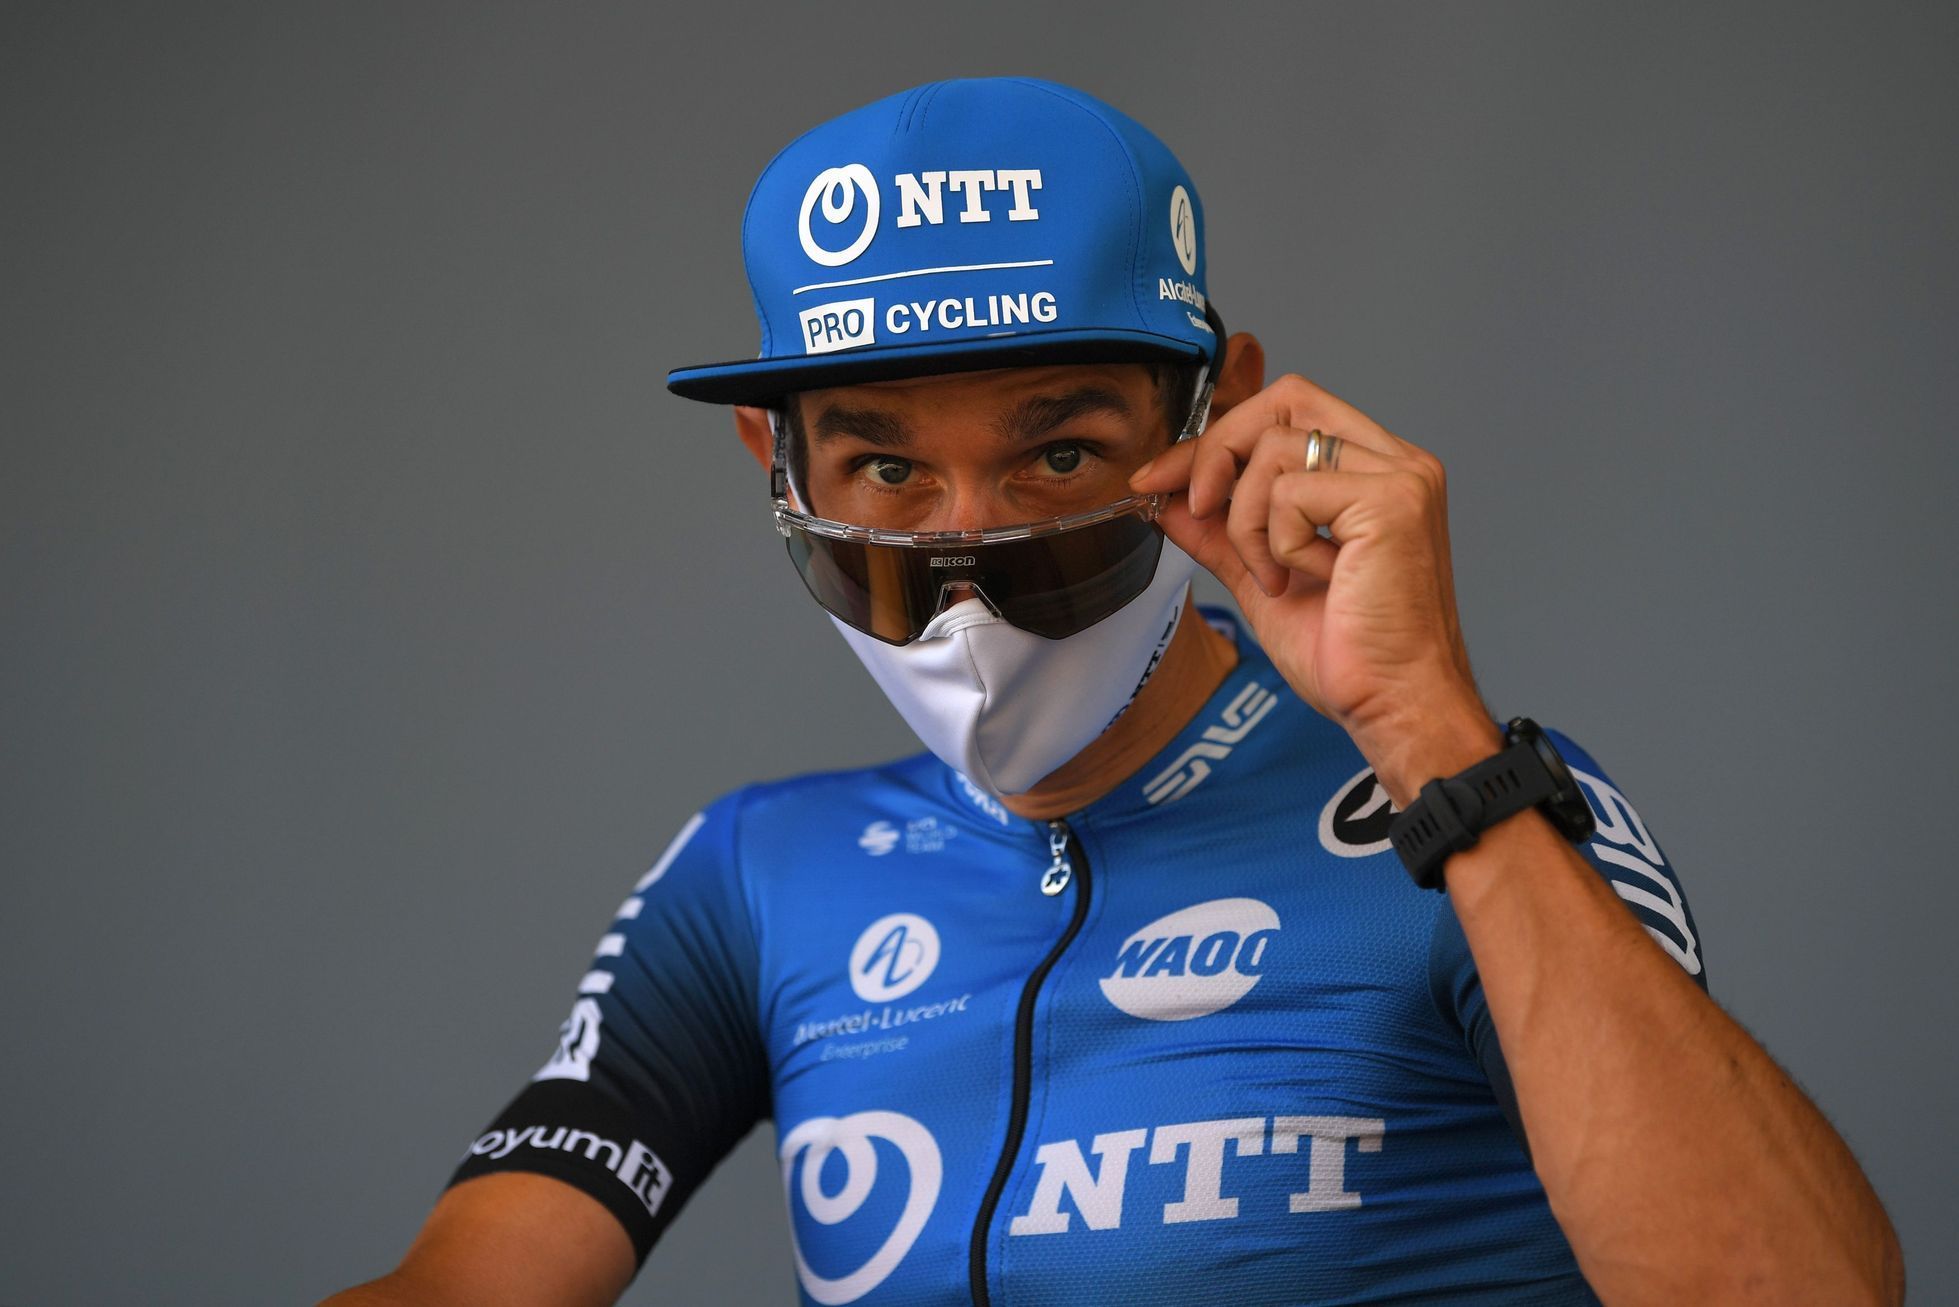 Roman Kreuziger na Tour de France 2020